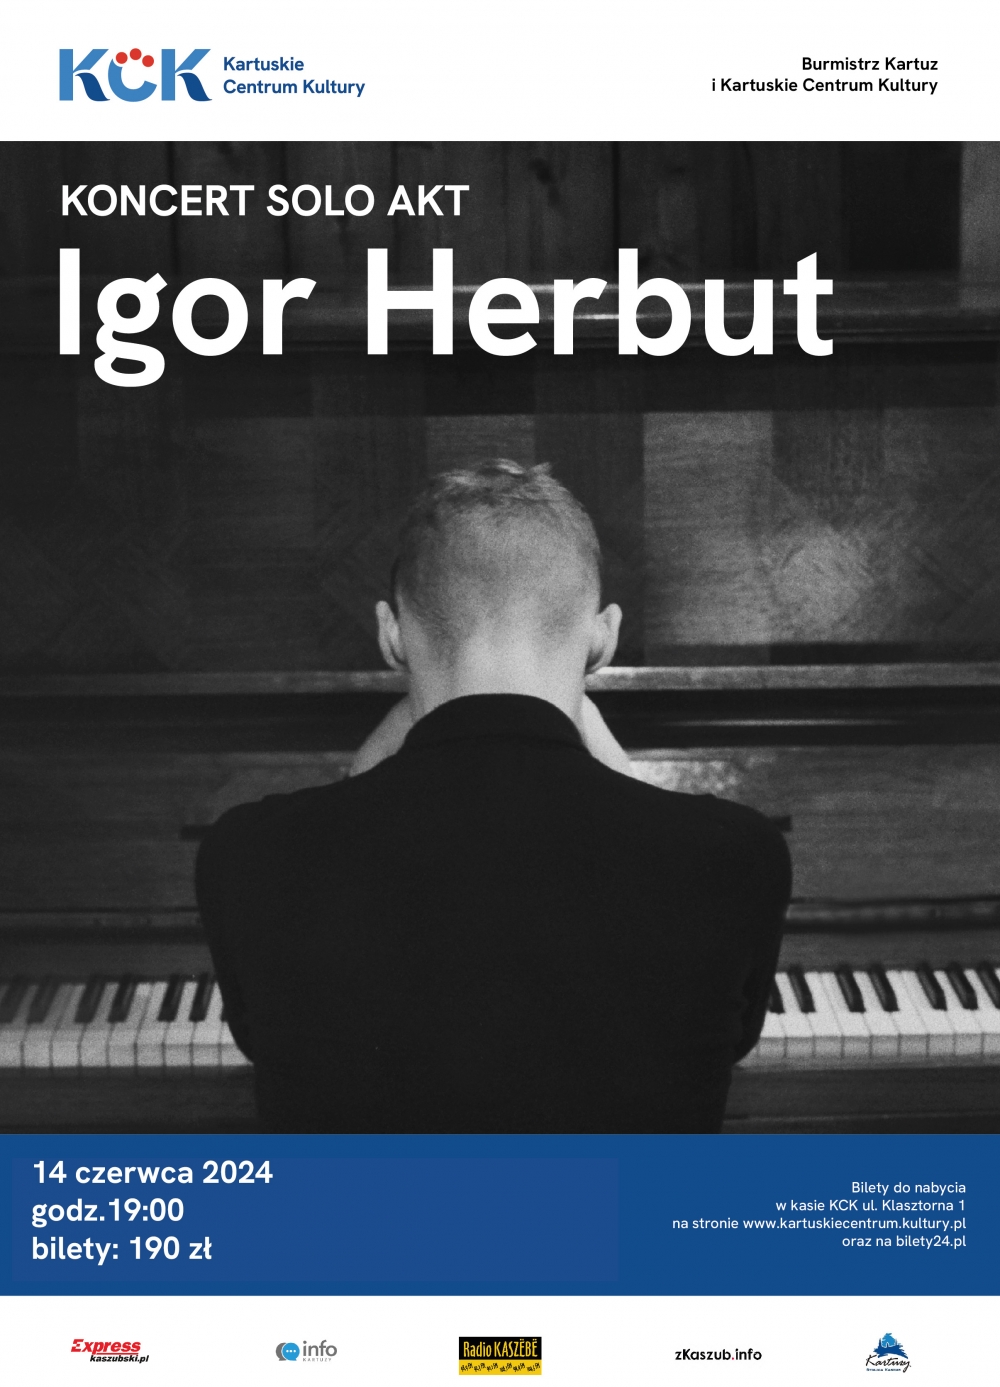 Plakat do wydarzenia: Koncert Solo Akt Igor Herbut